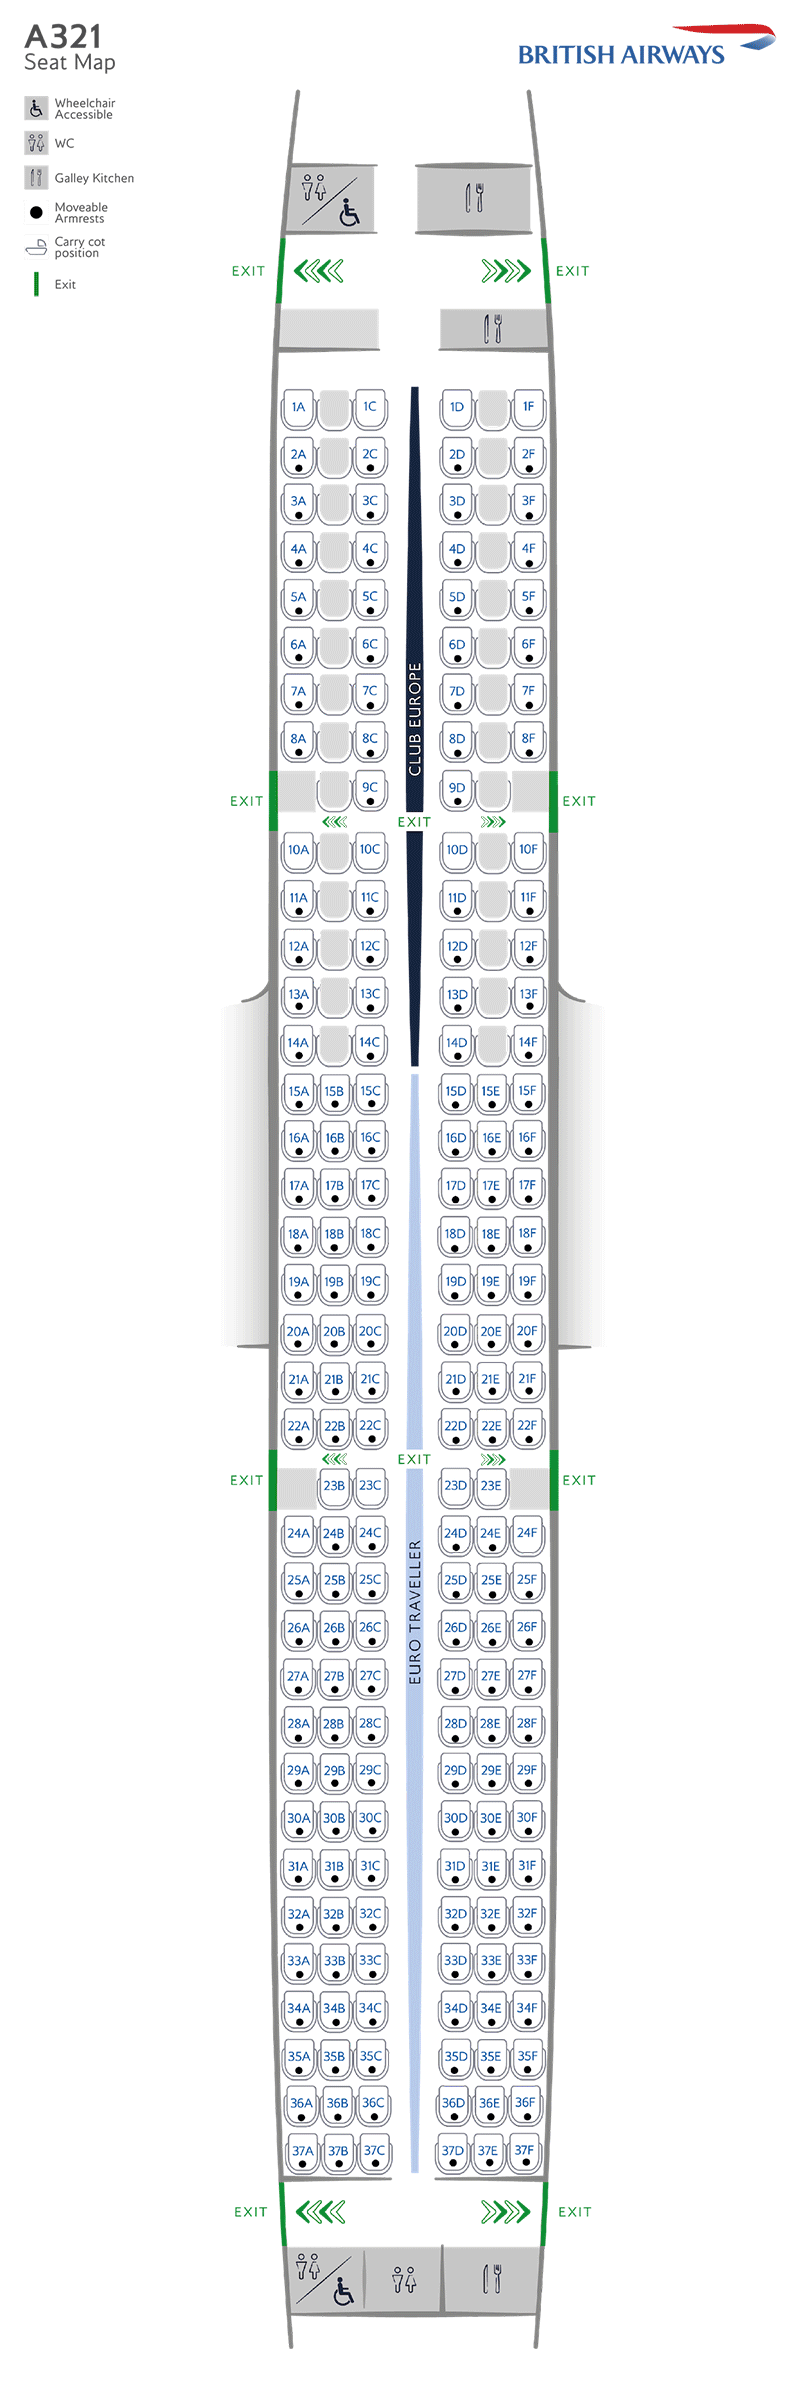 A321-200 座位图